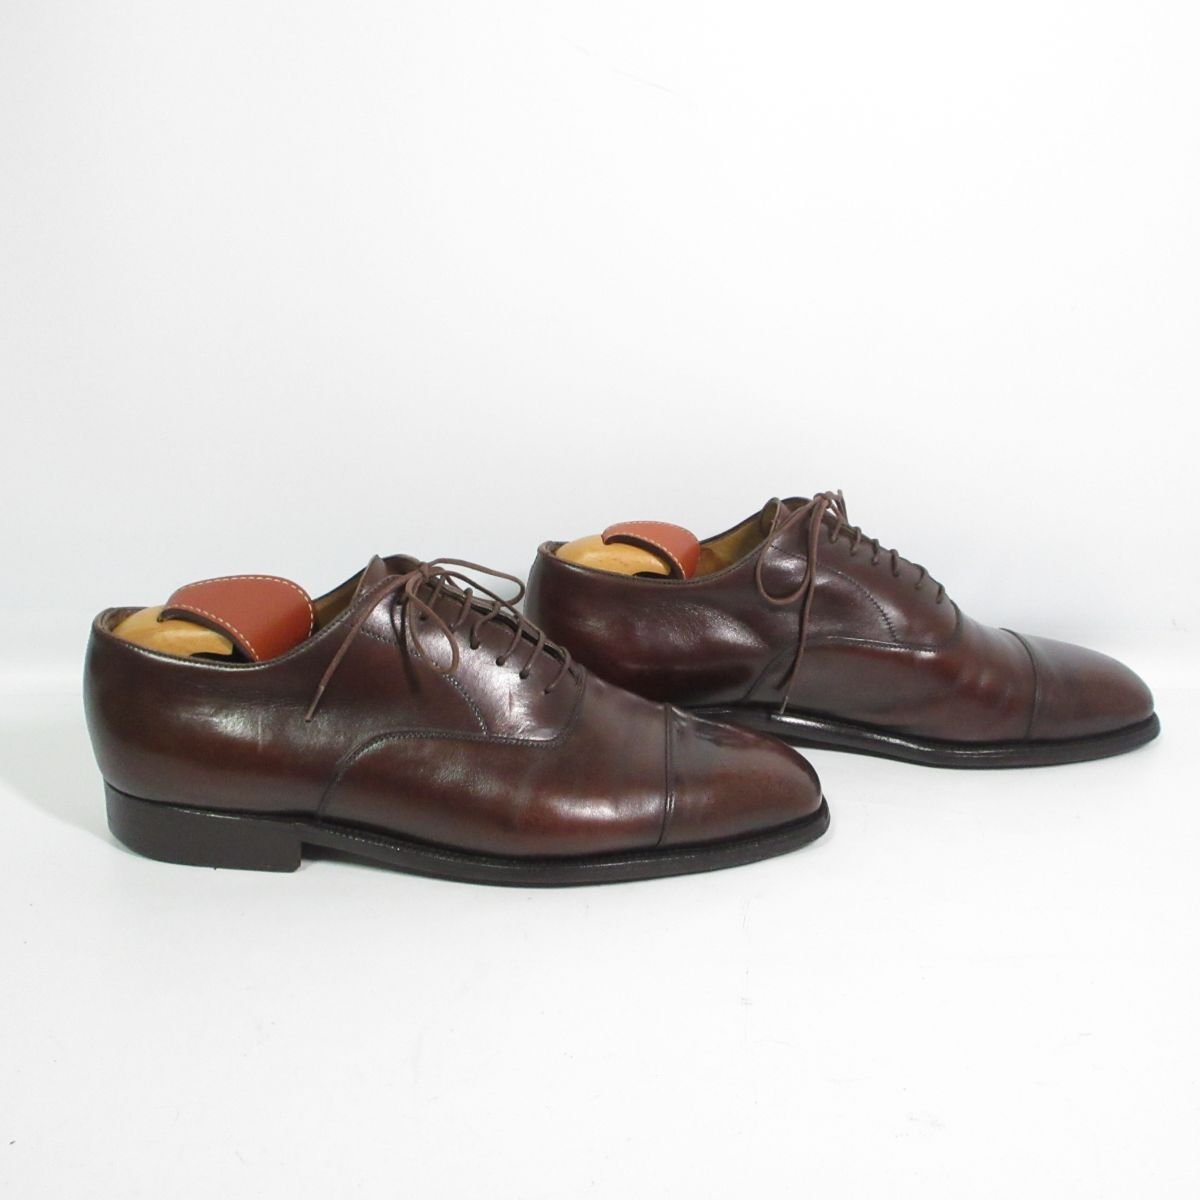 美品 Enzo Bonafe エンツォボナフェ レザー ストレートチップ ドレスシューズ 革靴 ビジネスシューズ 39.5 約24.5cm 茶 ブラウン 105_画像2